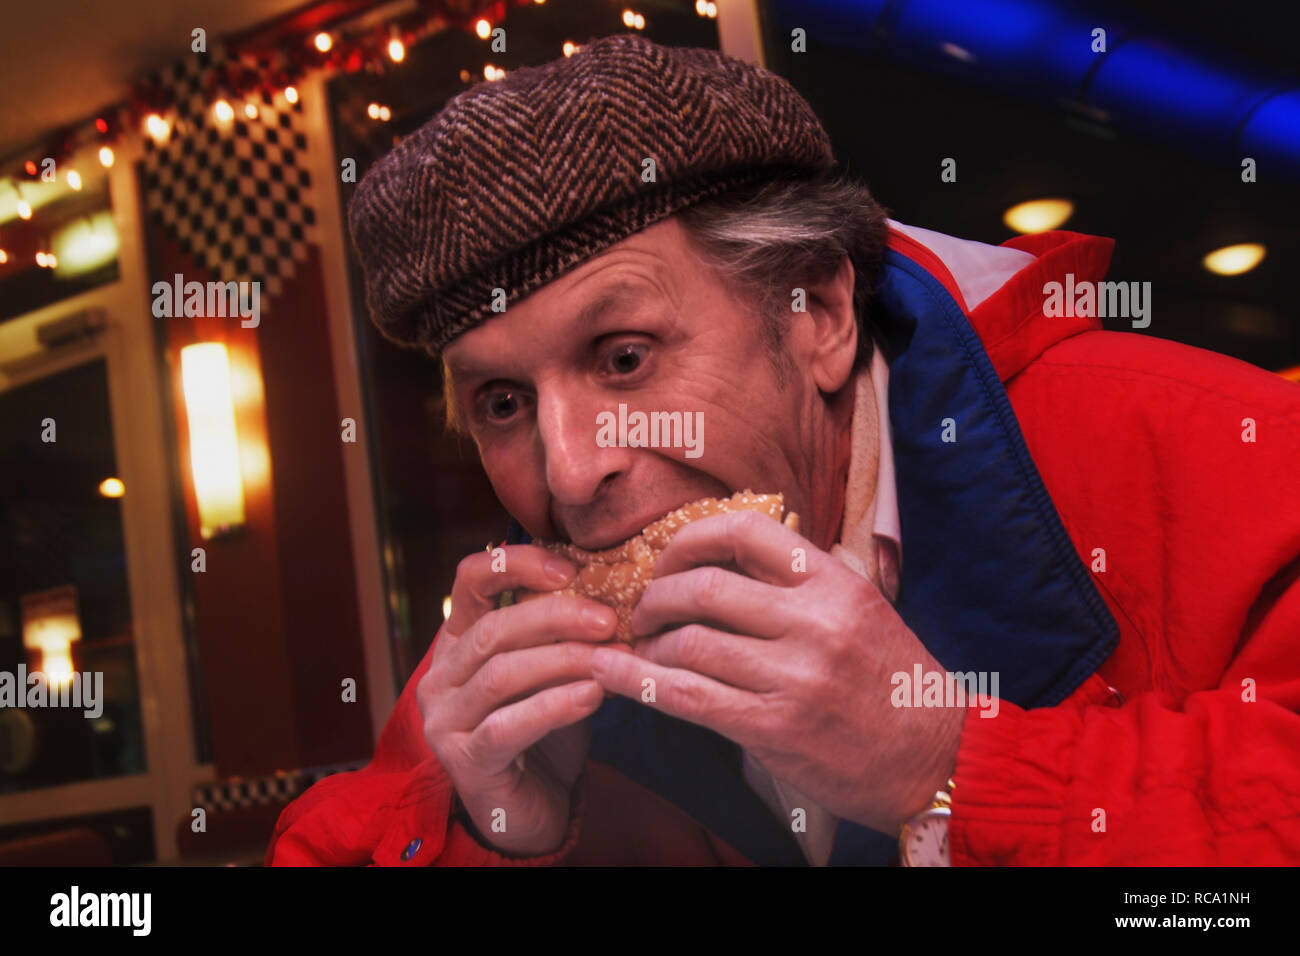 Mann mittleren Alters isst Hamburger | middleaged man eats hamburger Stock Photo